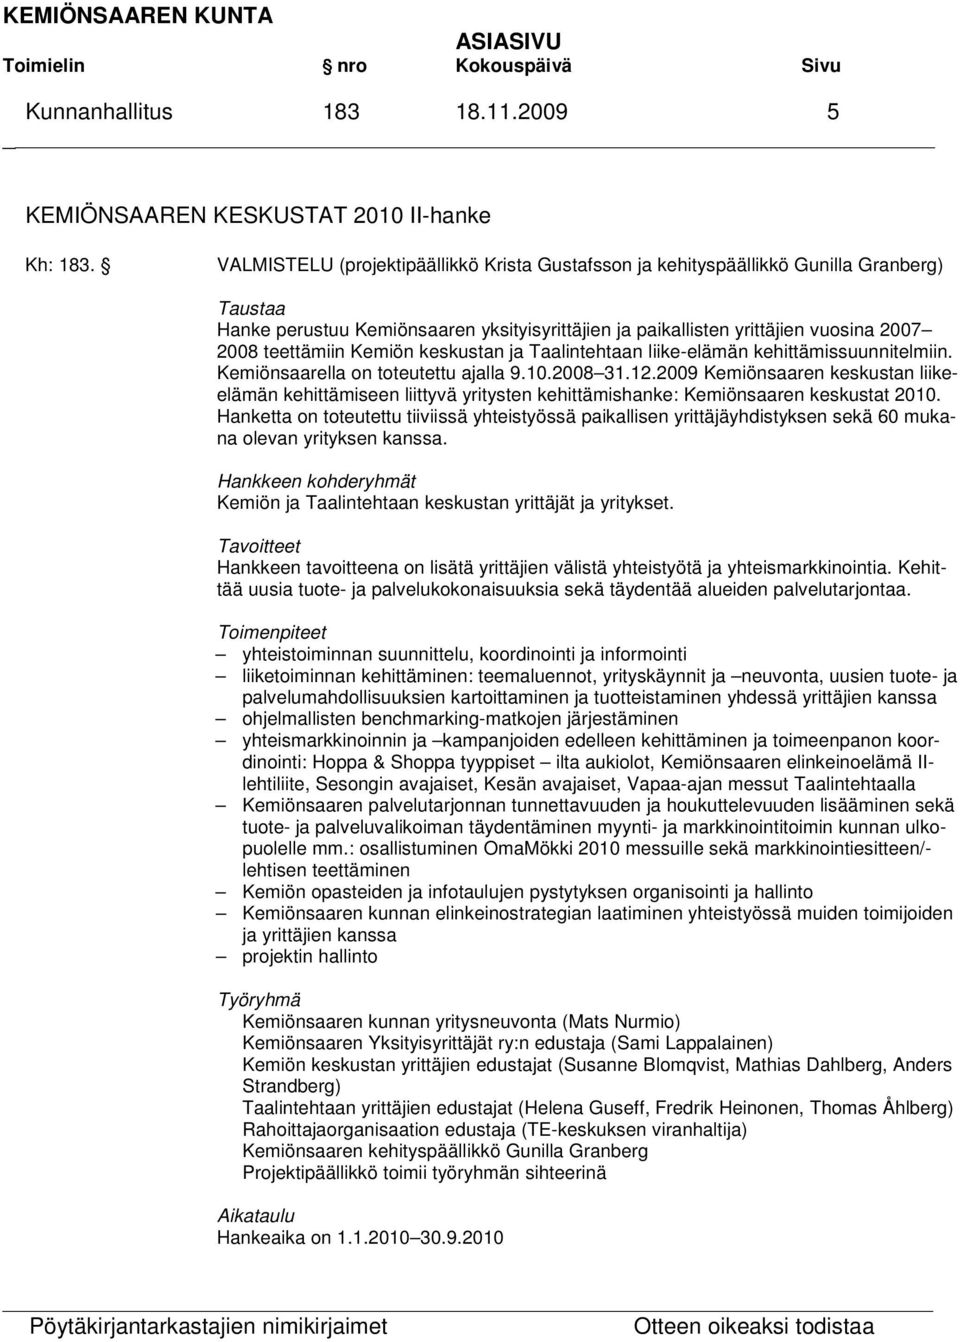 Kemiön keskustan ja Taalintehtaan liike-elämän kehittämissuunnitelmiin. Kemiönsaarella on toteutettu ajalla 9.10.2008 31.12.